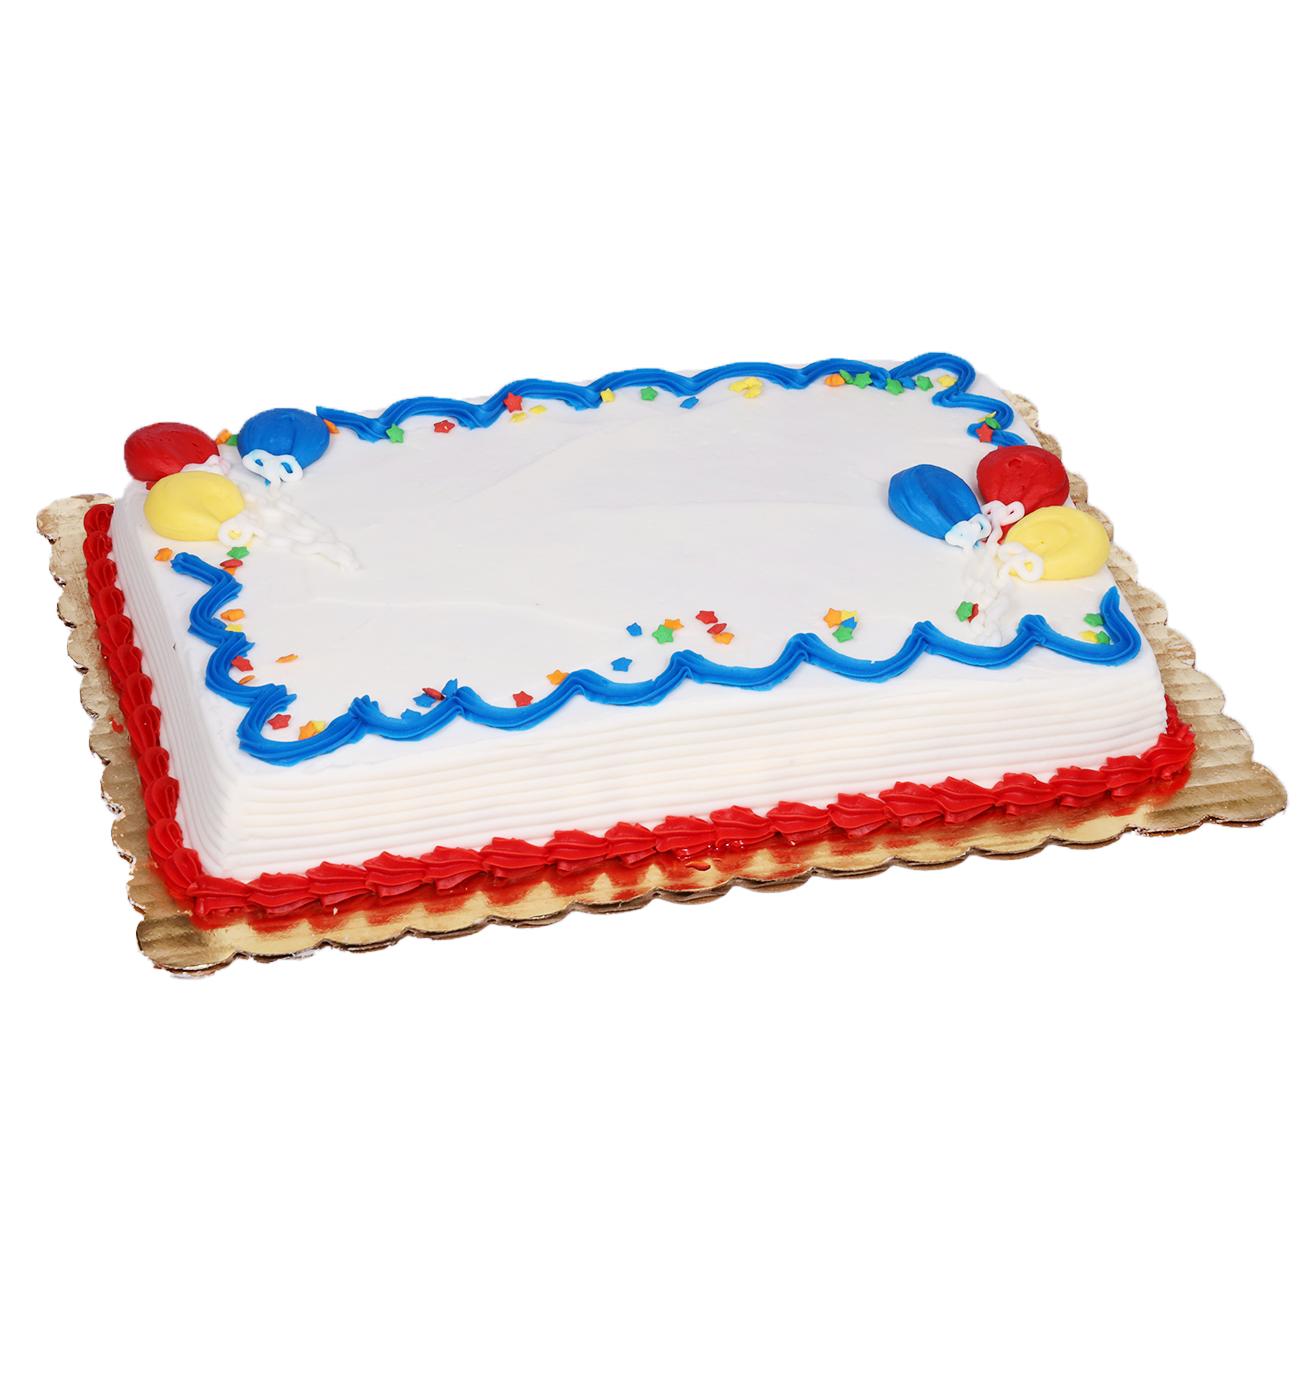 Baker Maid Balloon Celebration Buttercream White Cake; image 3 of 3